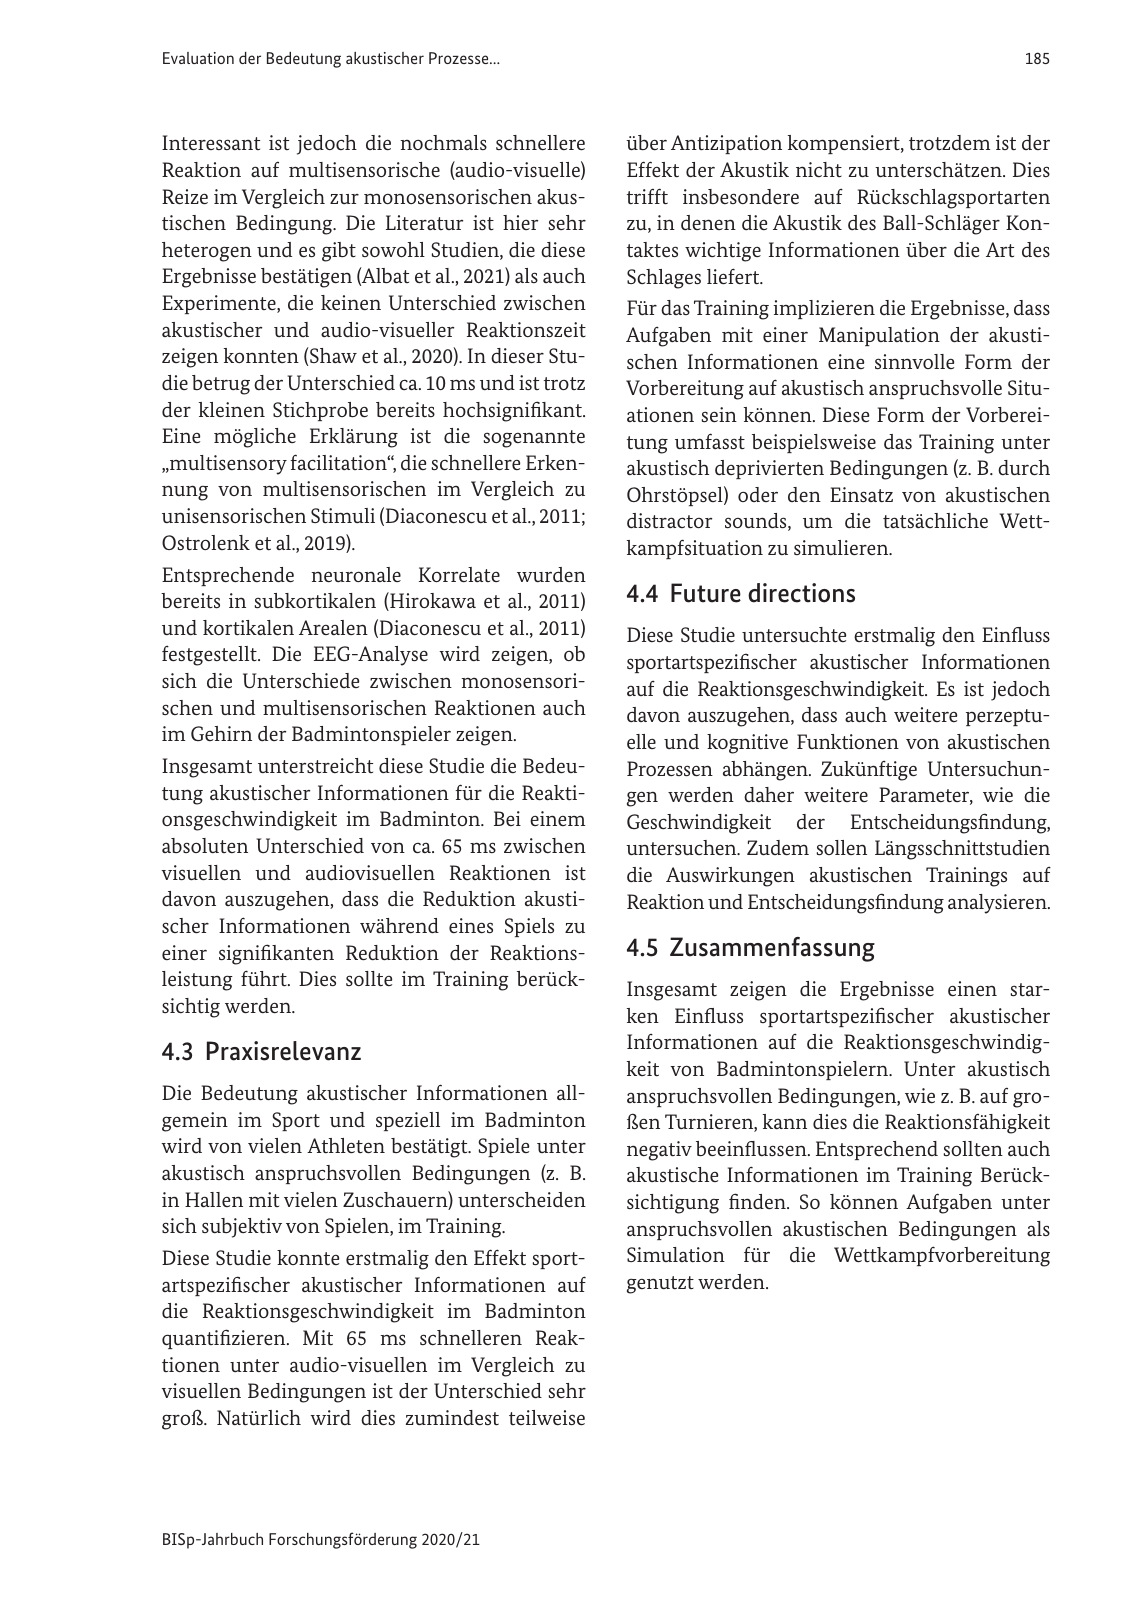 Vorschau BISp-Jahrbuch 2020/21 Seite 187